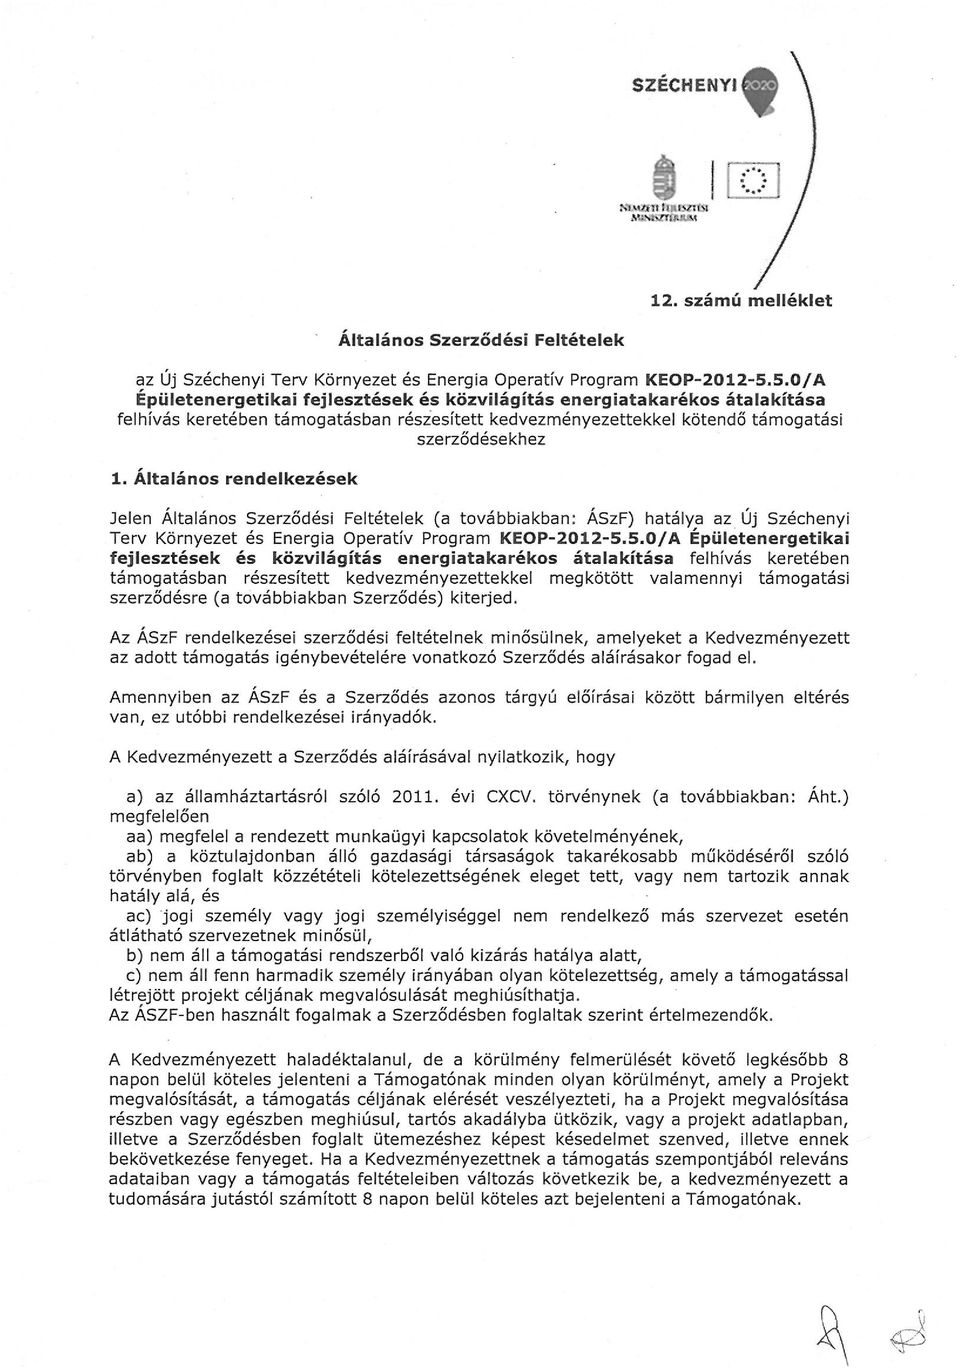 Általános rendelkezések Jelen Általános Szerződési Feltételek (a továbbiakban: ÁSzF) hatálya az Új Széchenyi Terv Környezet és Energia Operatív Program KEOP-2012-5.